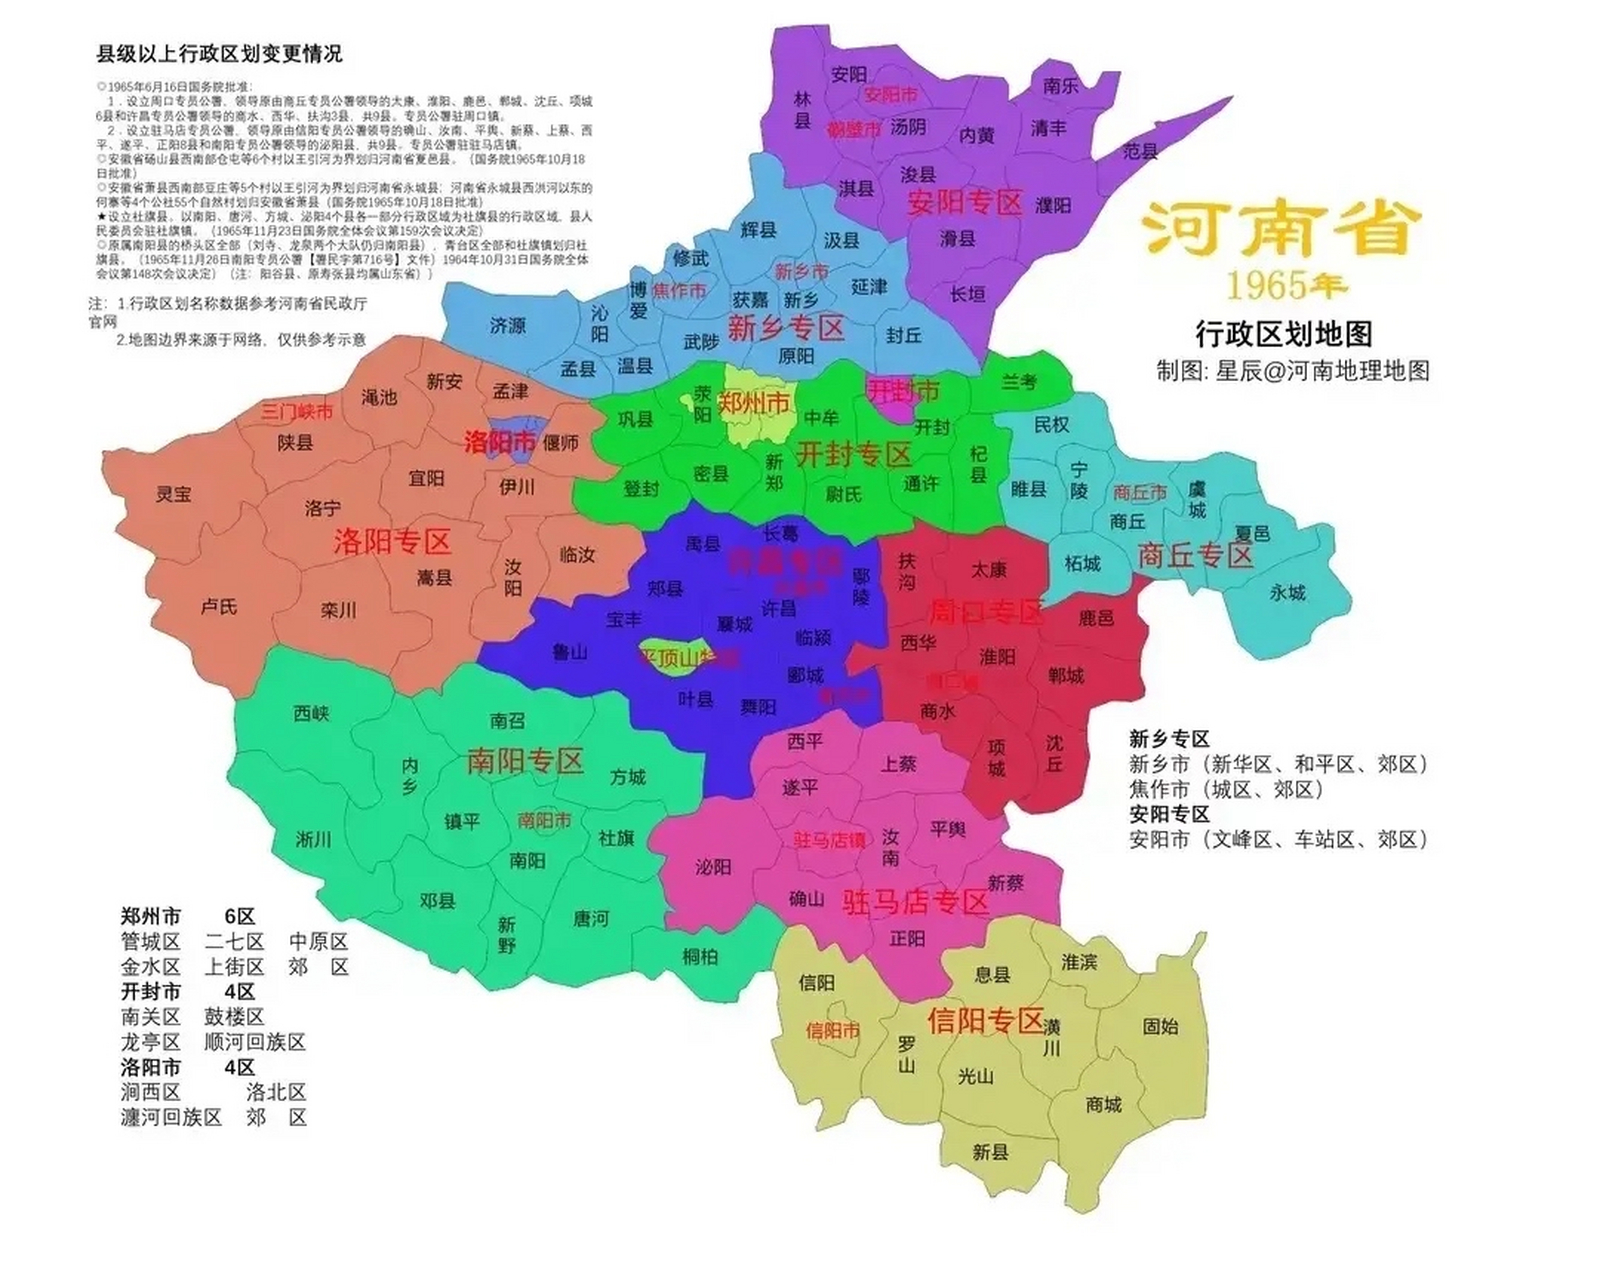 1965年河南省行政区划地图 1965年底,河南省辖10专区: 安阳,新乡,洛阳